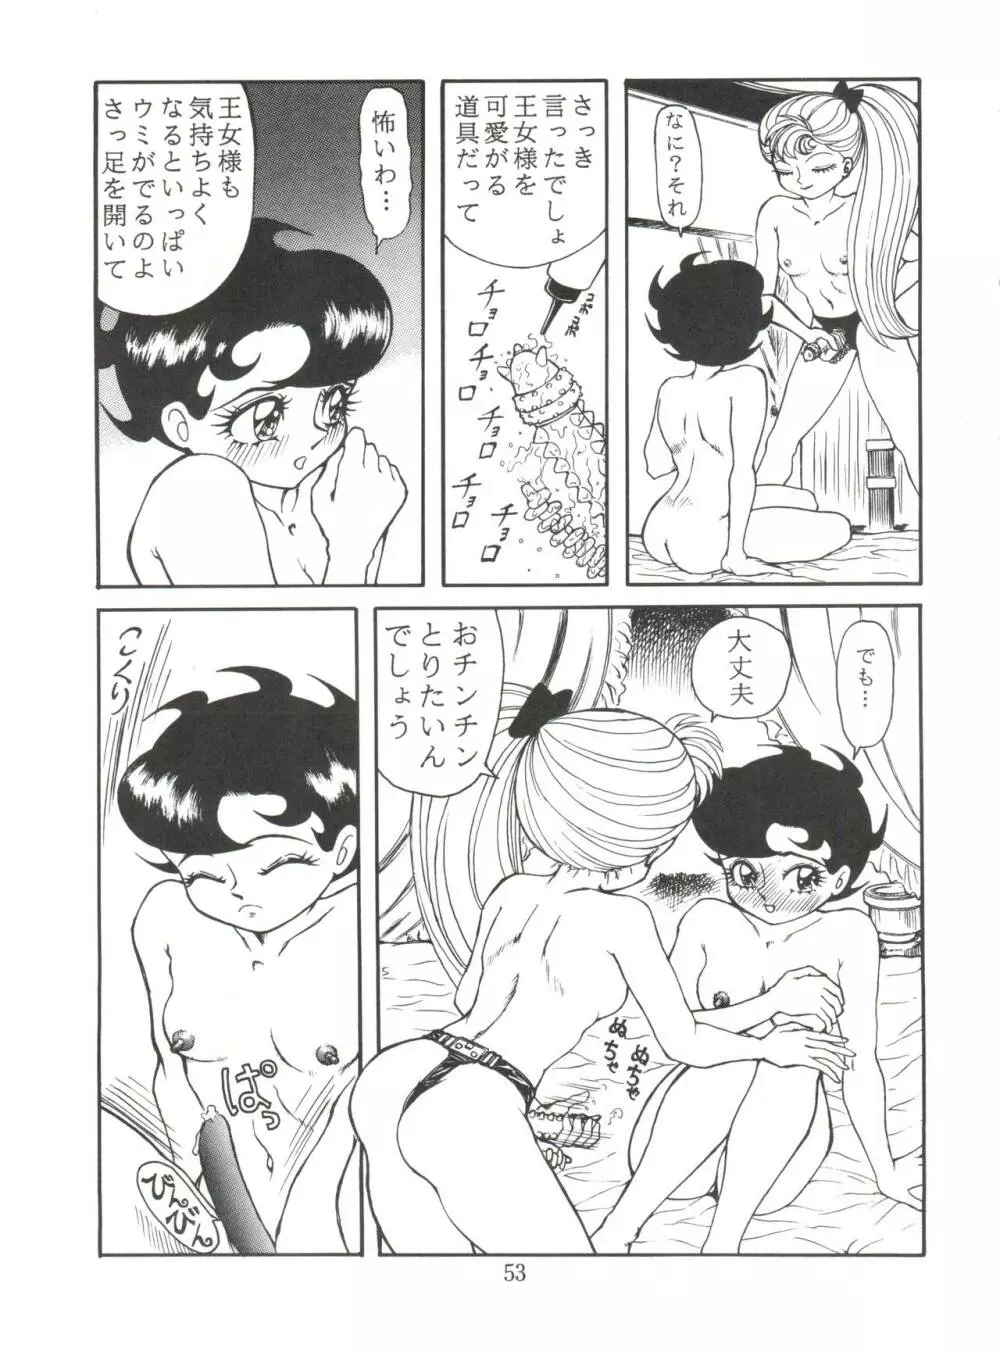 JoRiJoRi No.6 52ページ